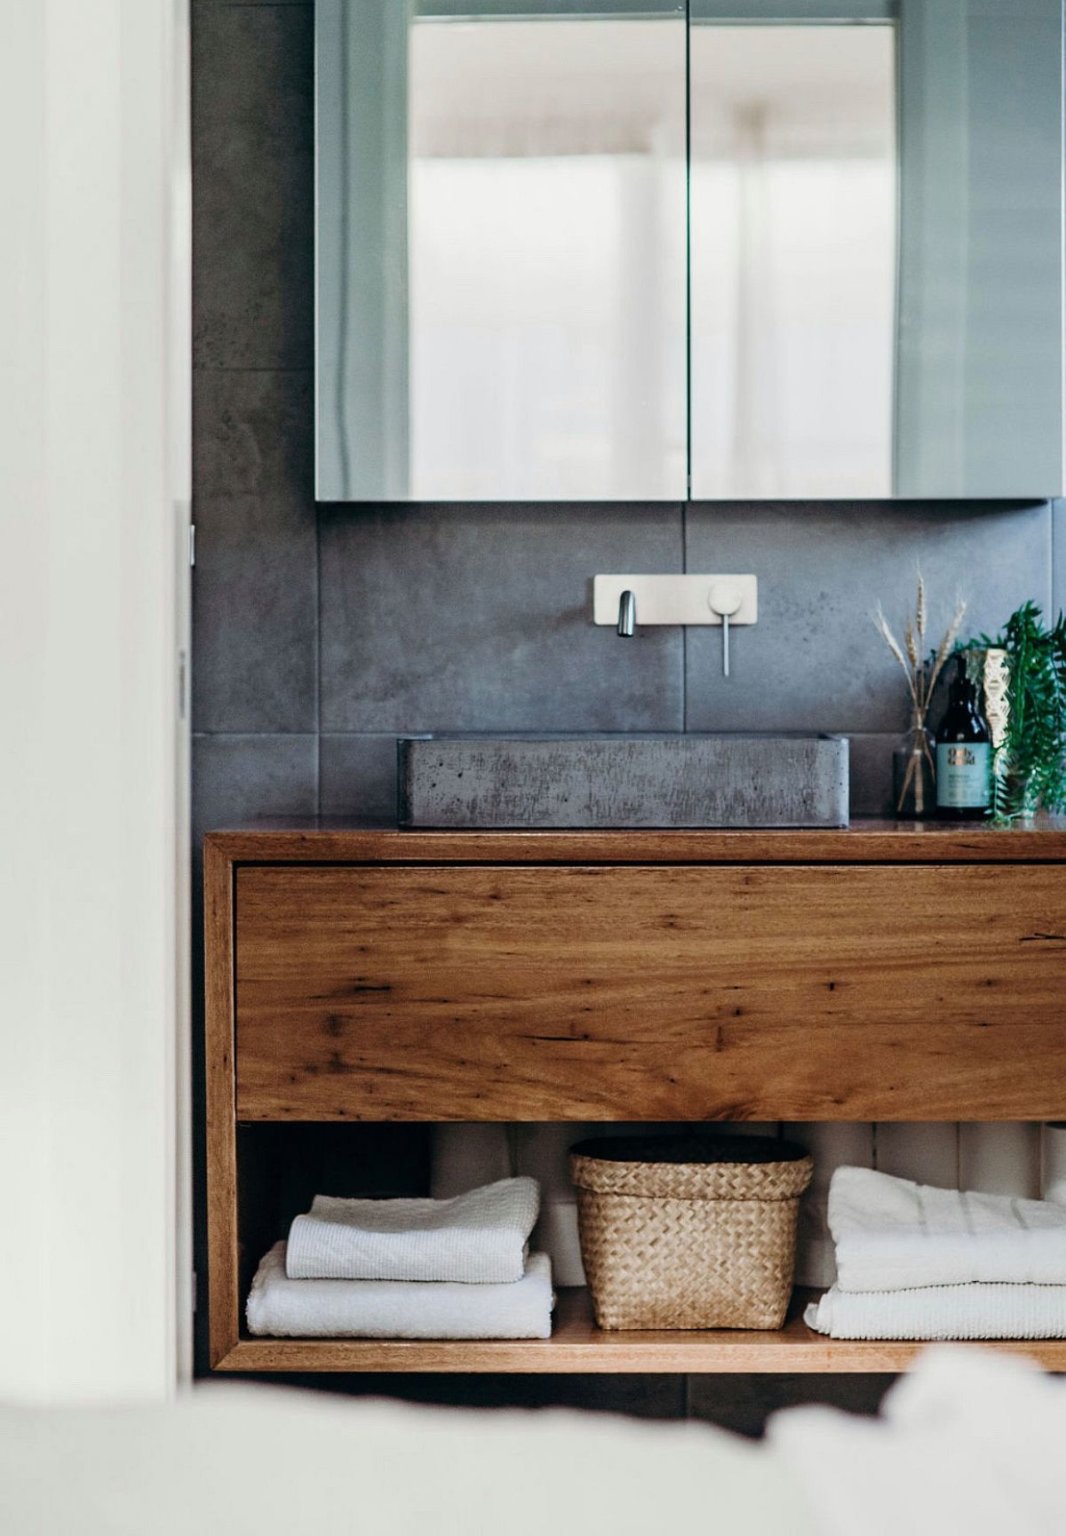 hình ảnh một góc phòng tắm mùa hè với tường bê tông xám sau gương soi, tủ gỗ mộc mạc